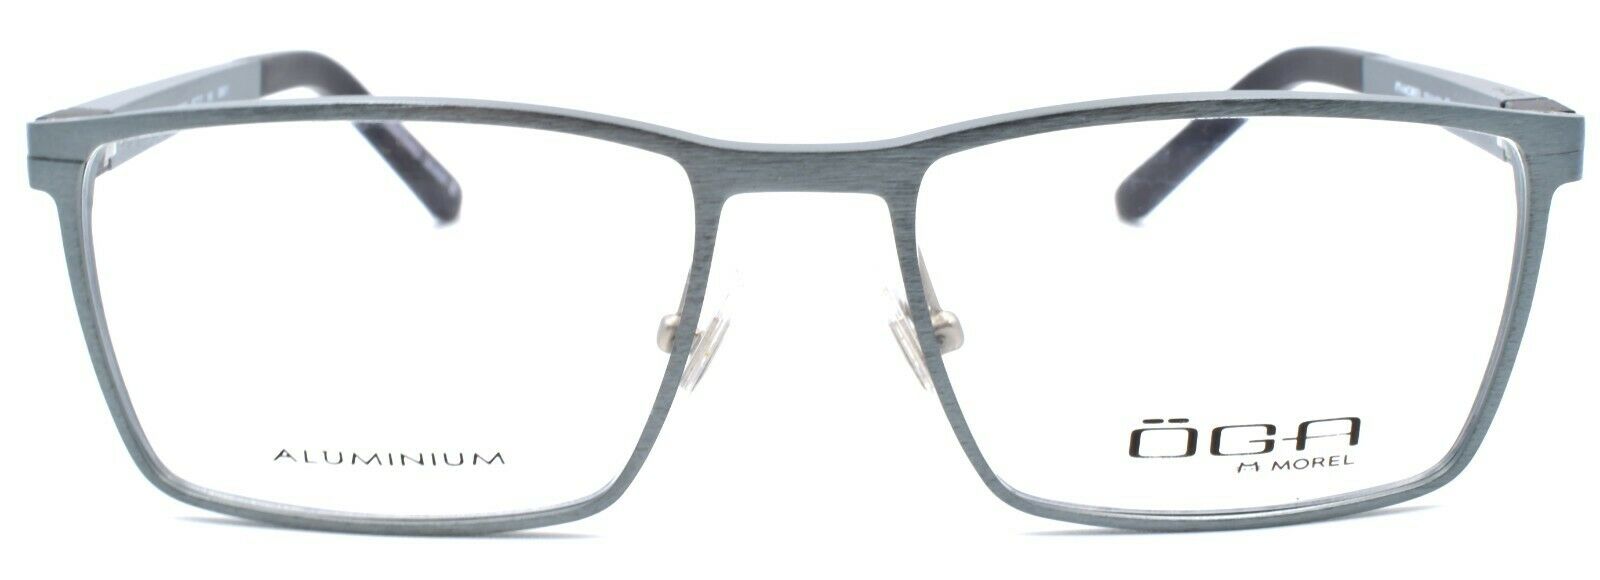 2-OGA by Morel 7935O GN011 Men's Eyeglasses Frames Aluminum 53-17-140 Slate Grey-3604770887488-IKSpecs